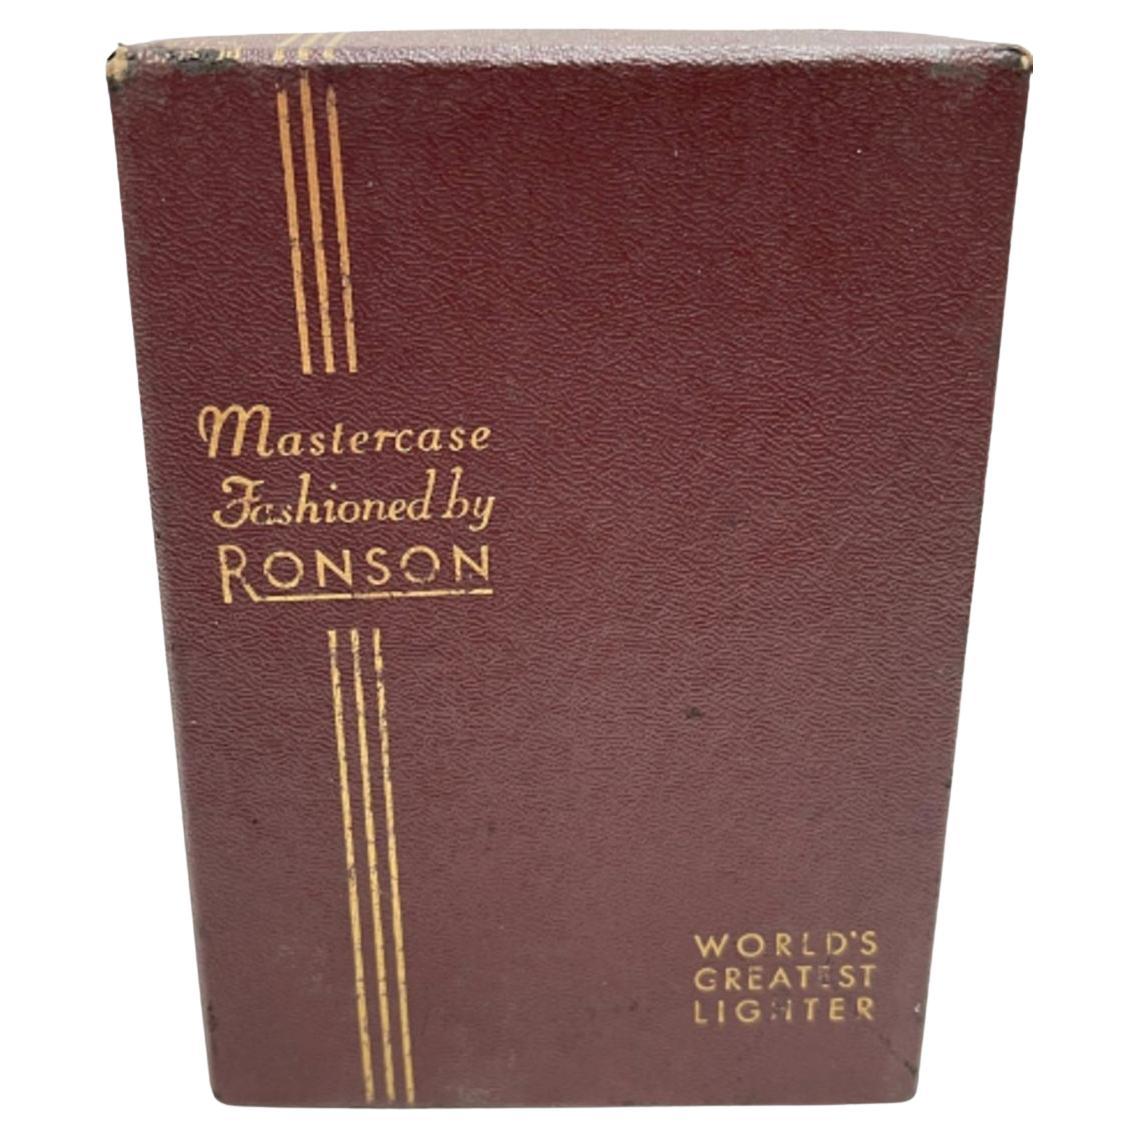 Art Deco Ronson Mastercase Cigarette Lighter Case Combo With Original Box